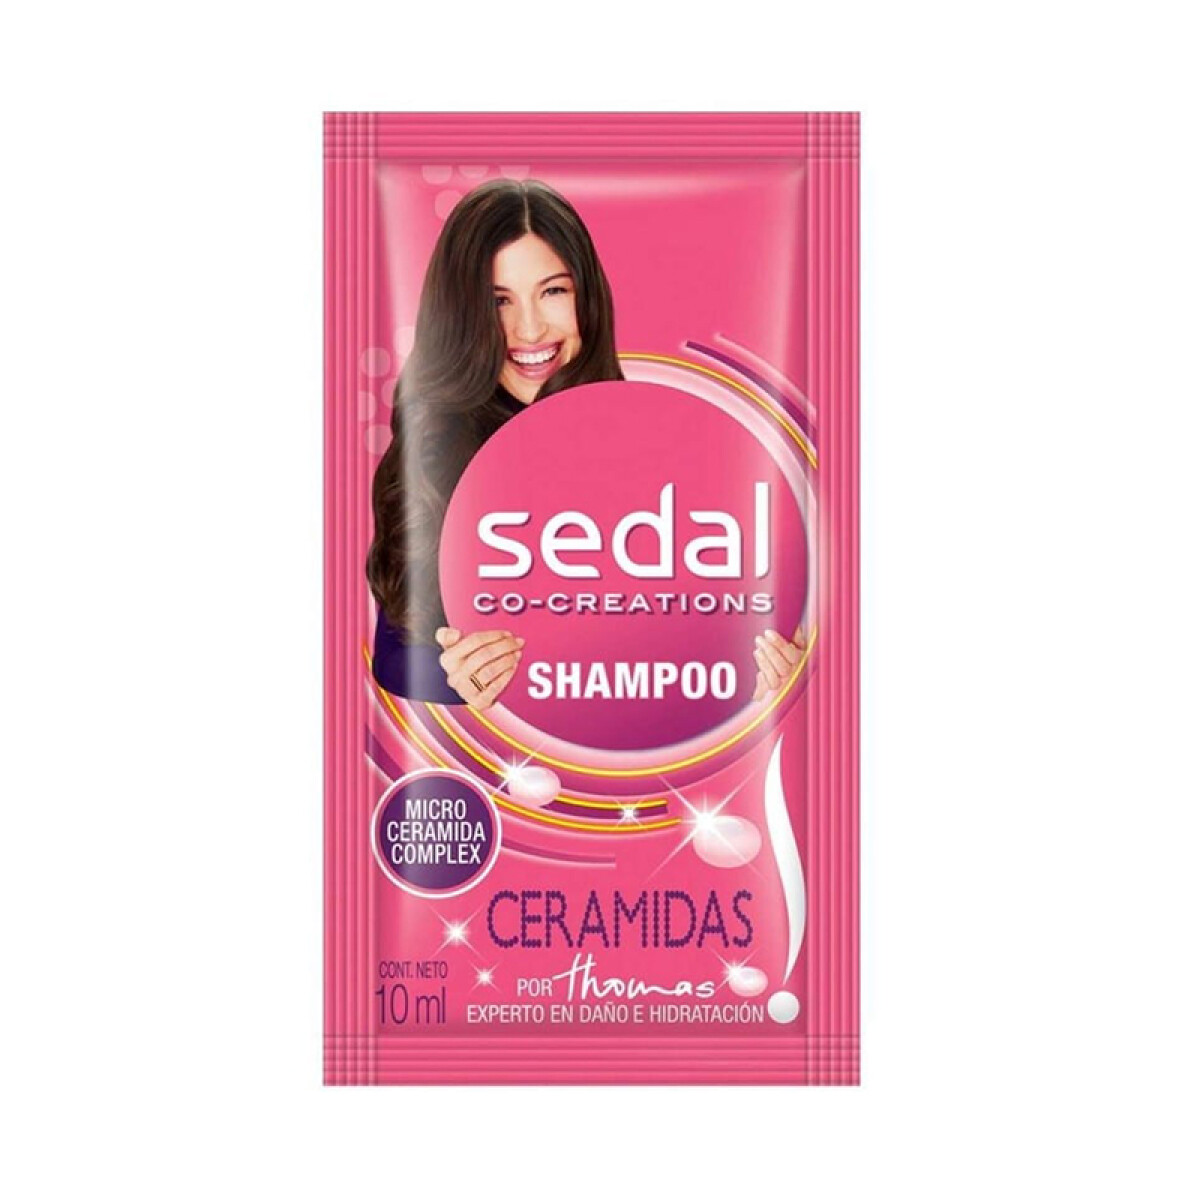 Sachet SEDAL 10ml x24 unidades - Shampoo Ceramidas 